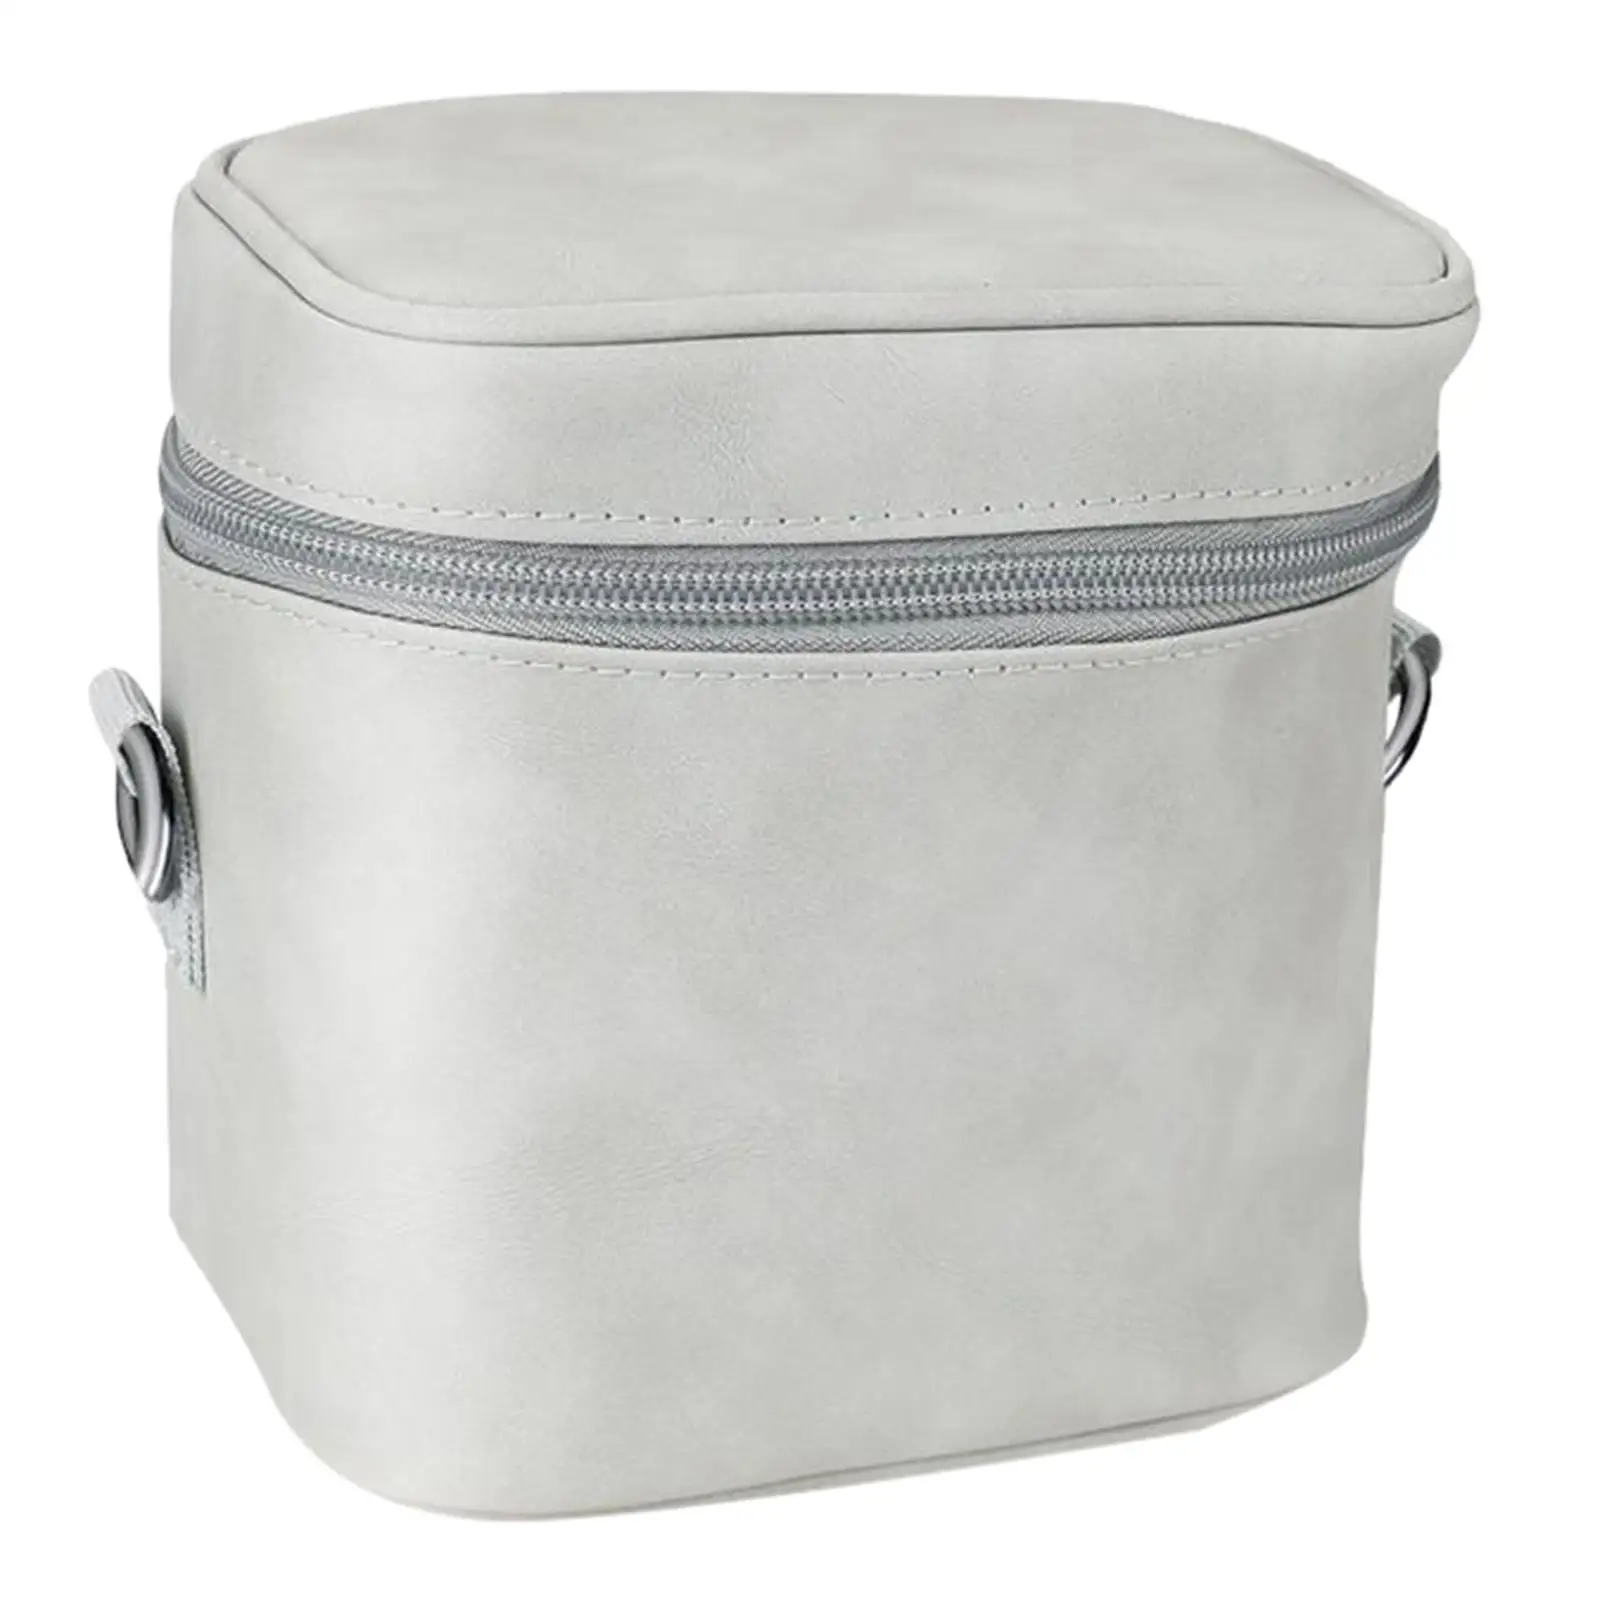 Portable Shoulder Bag Soft  Storage Box Carrying Case for  2 , 16*12.6*16cm